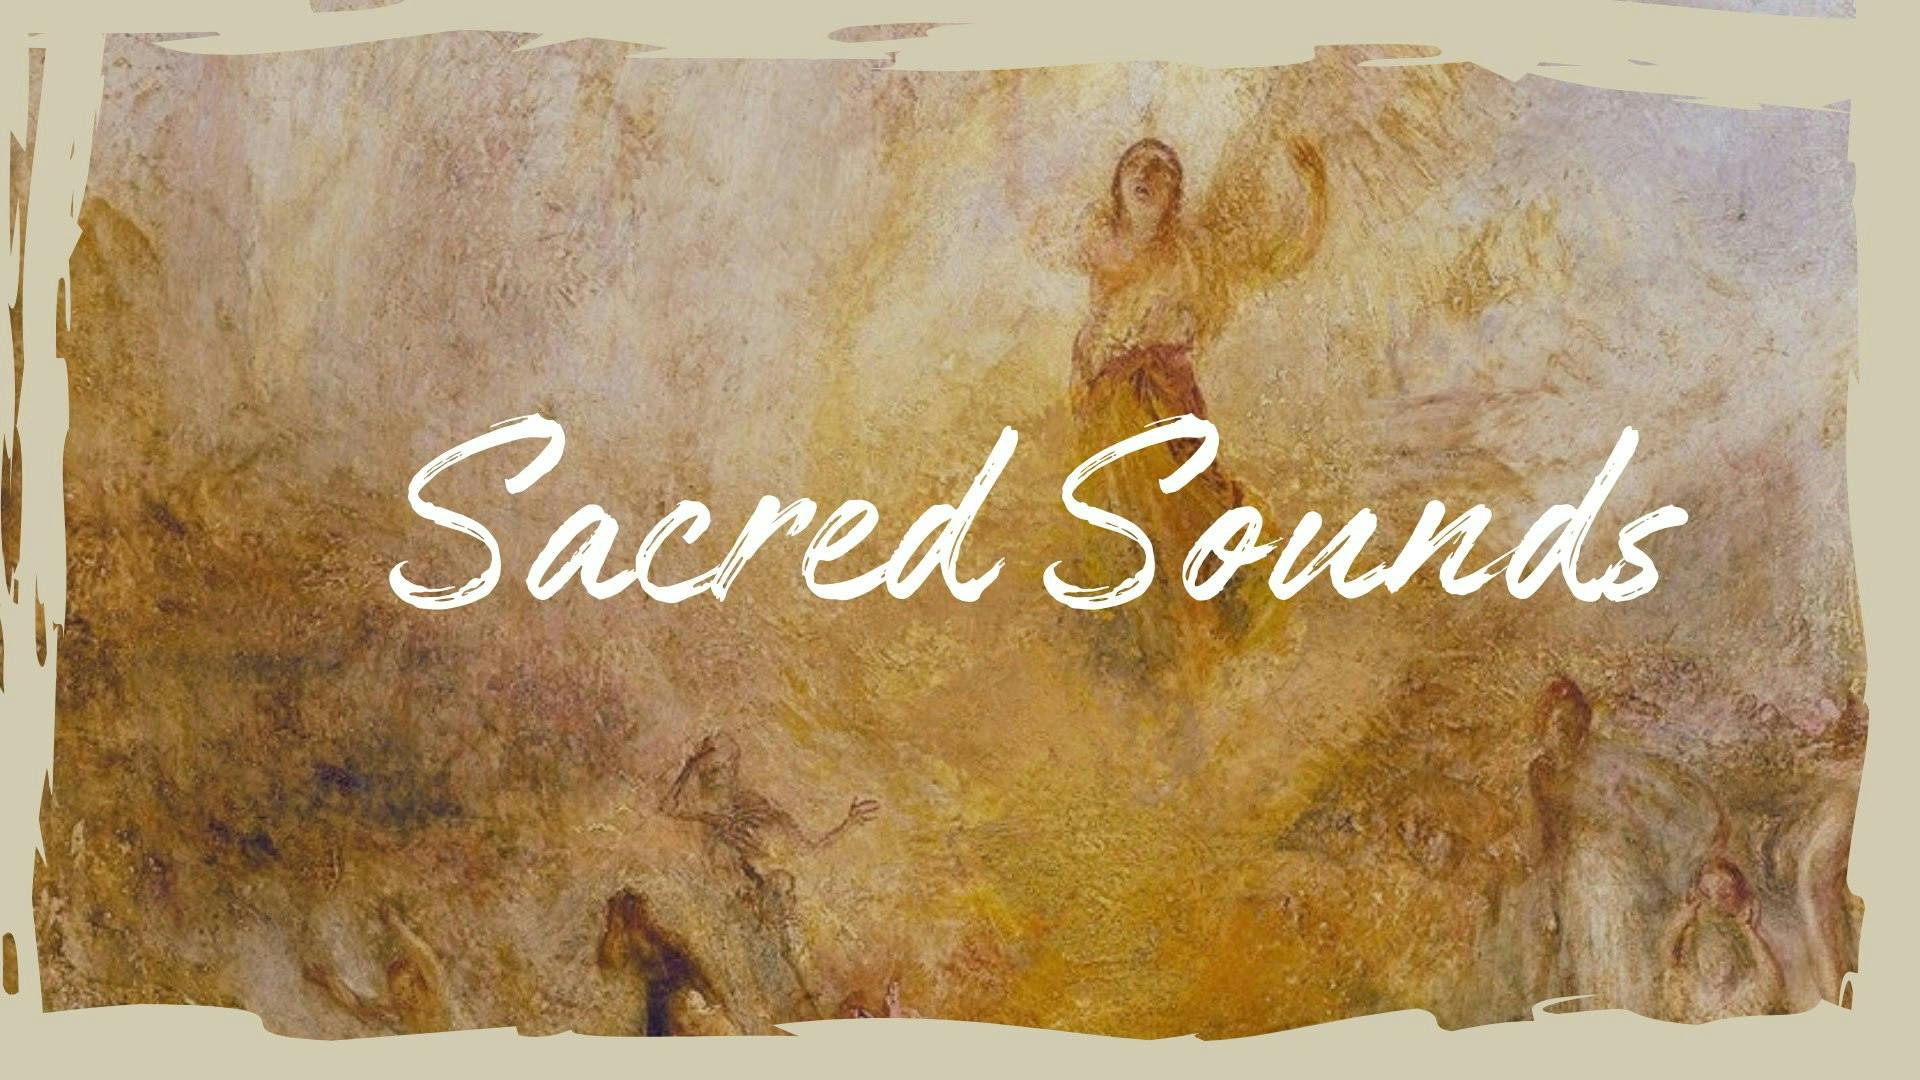 Sacred Sounds